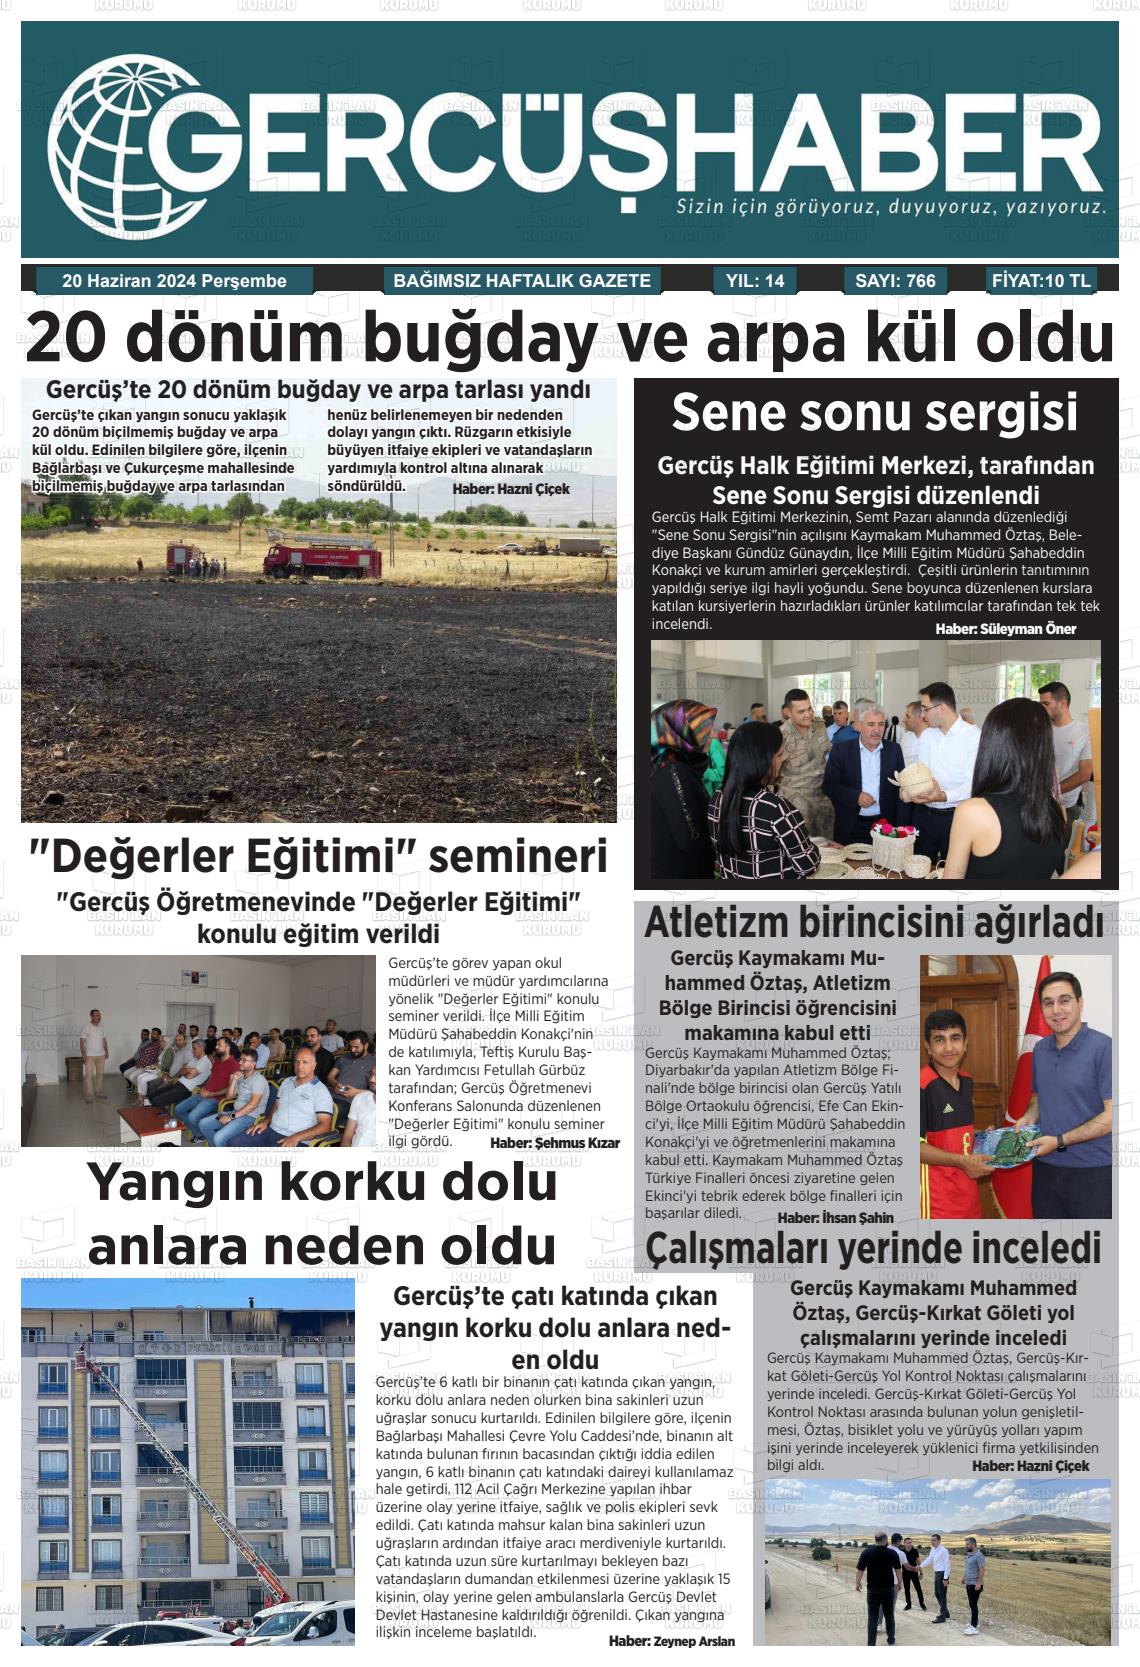 GERCÜŞ HABER Gazetesi